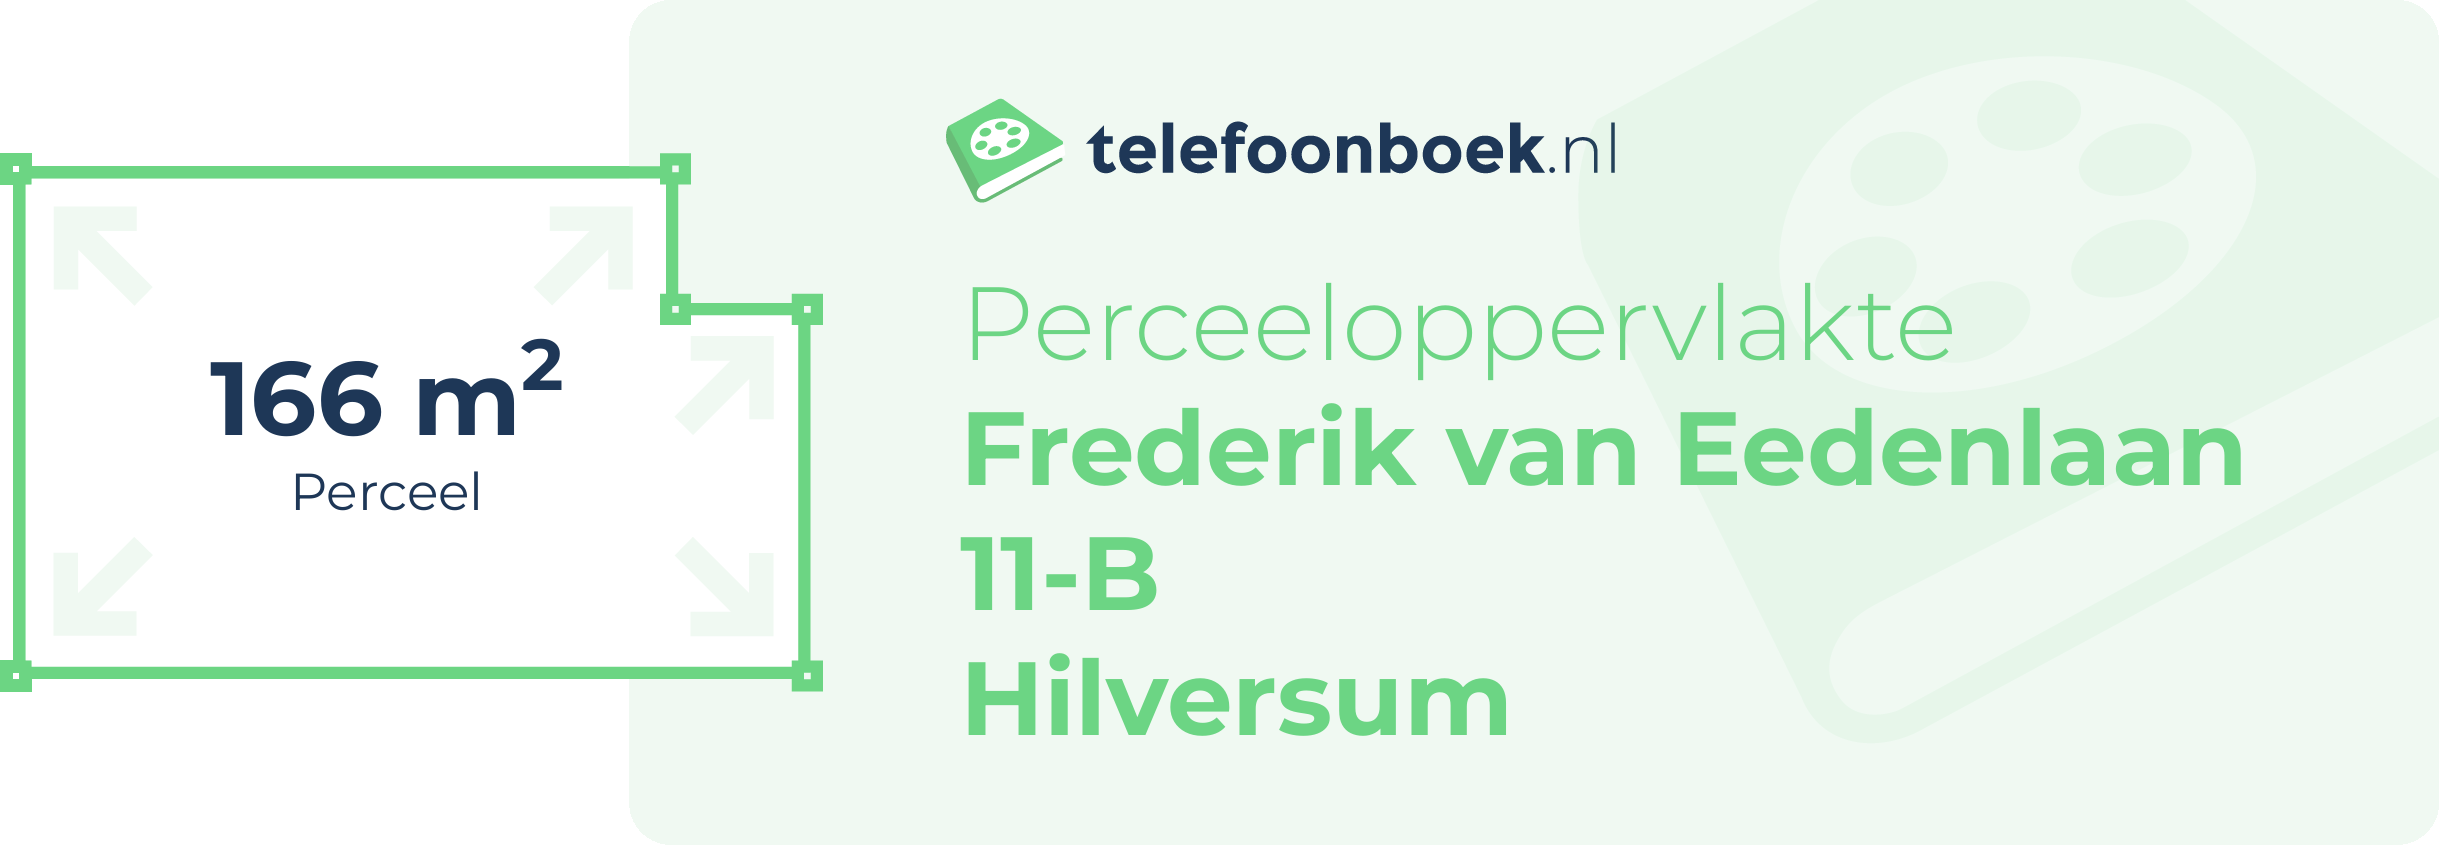 Perceeloppervlakte Frederik Van Eedenlaan 11-B Hilversum